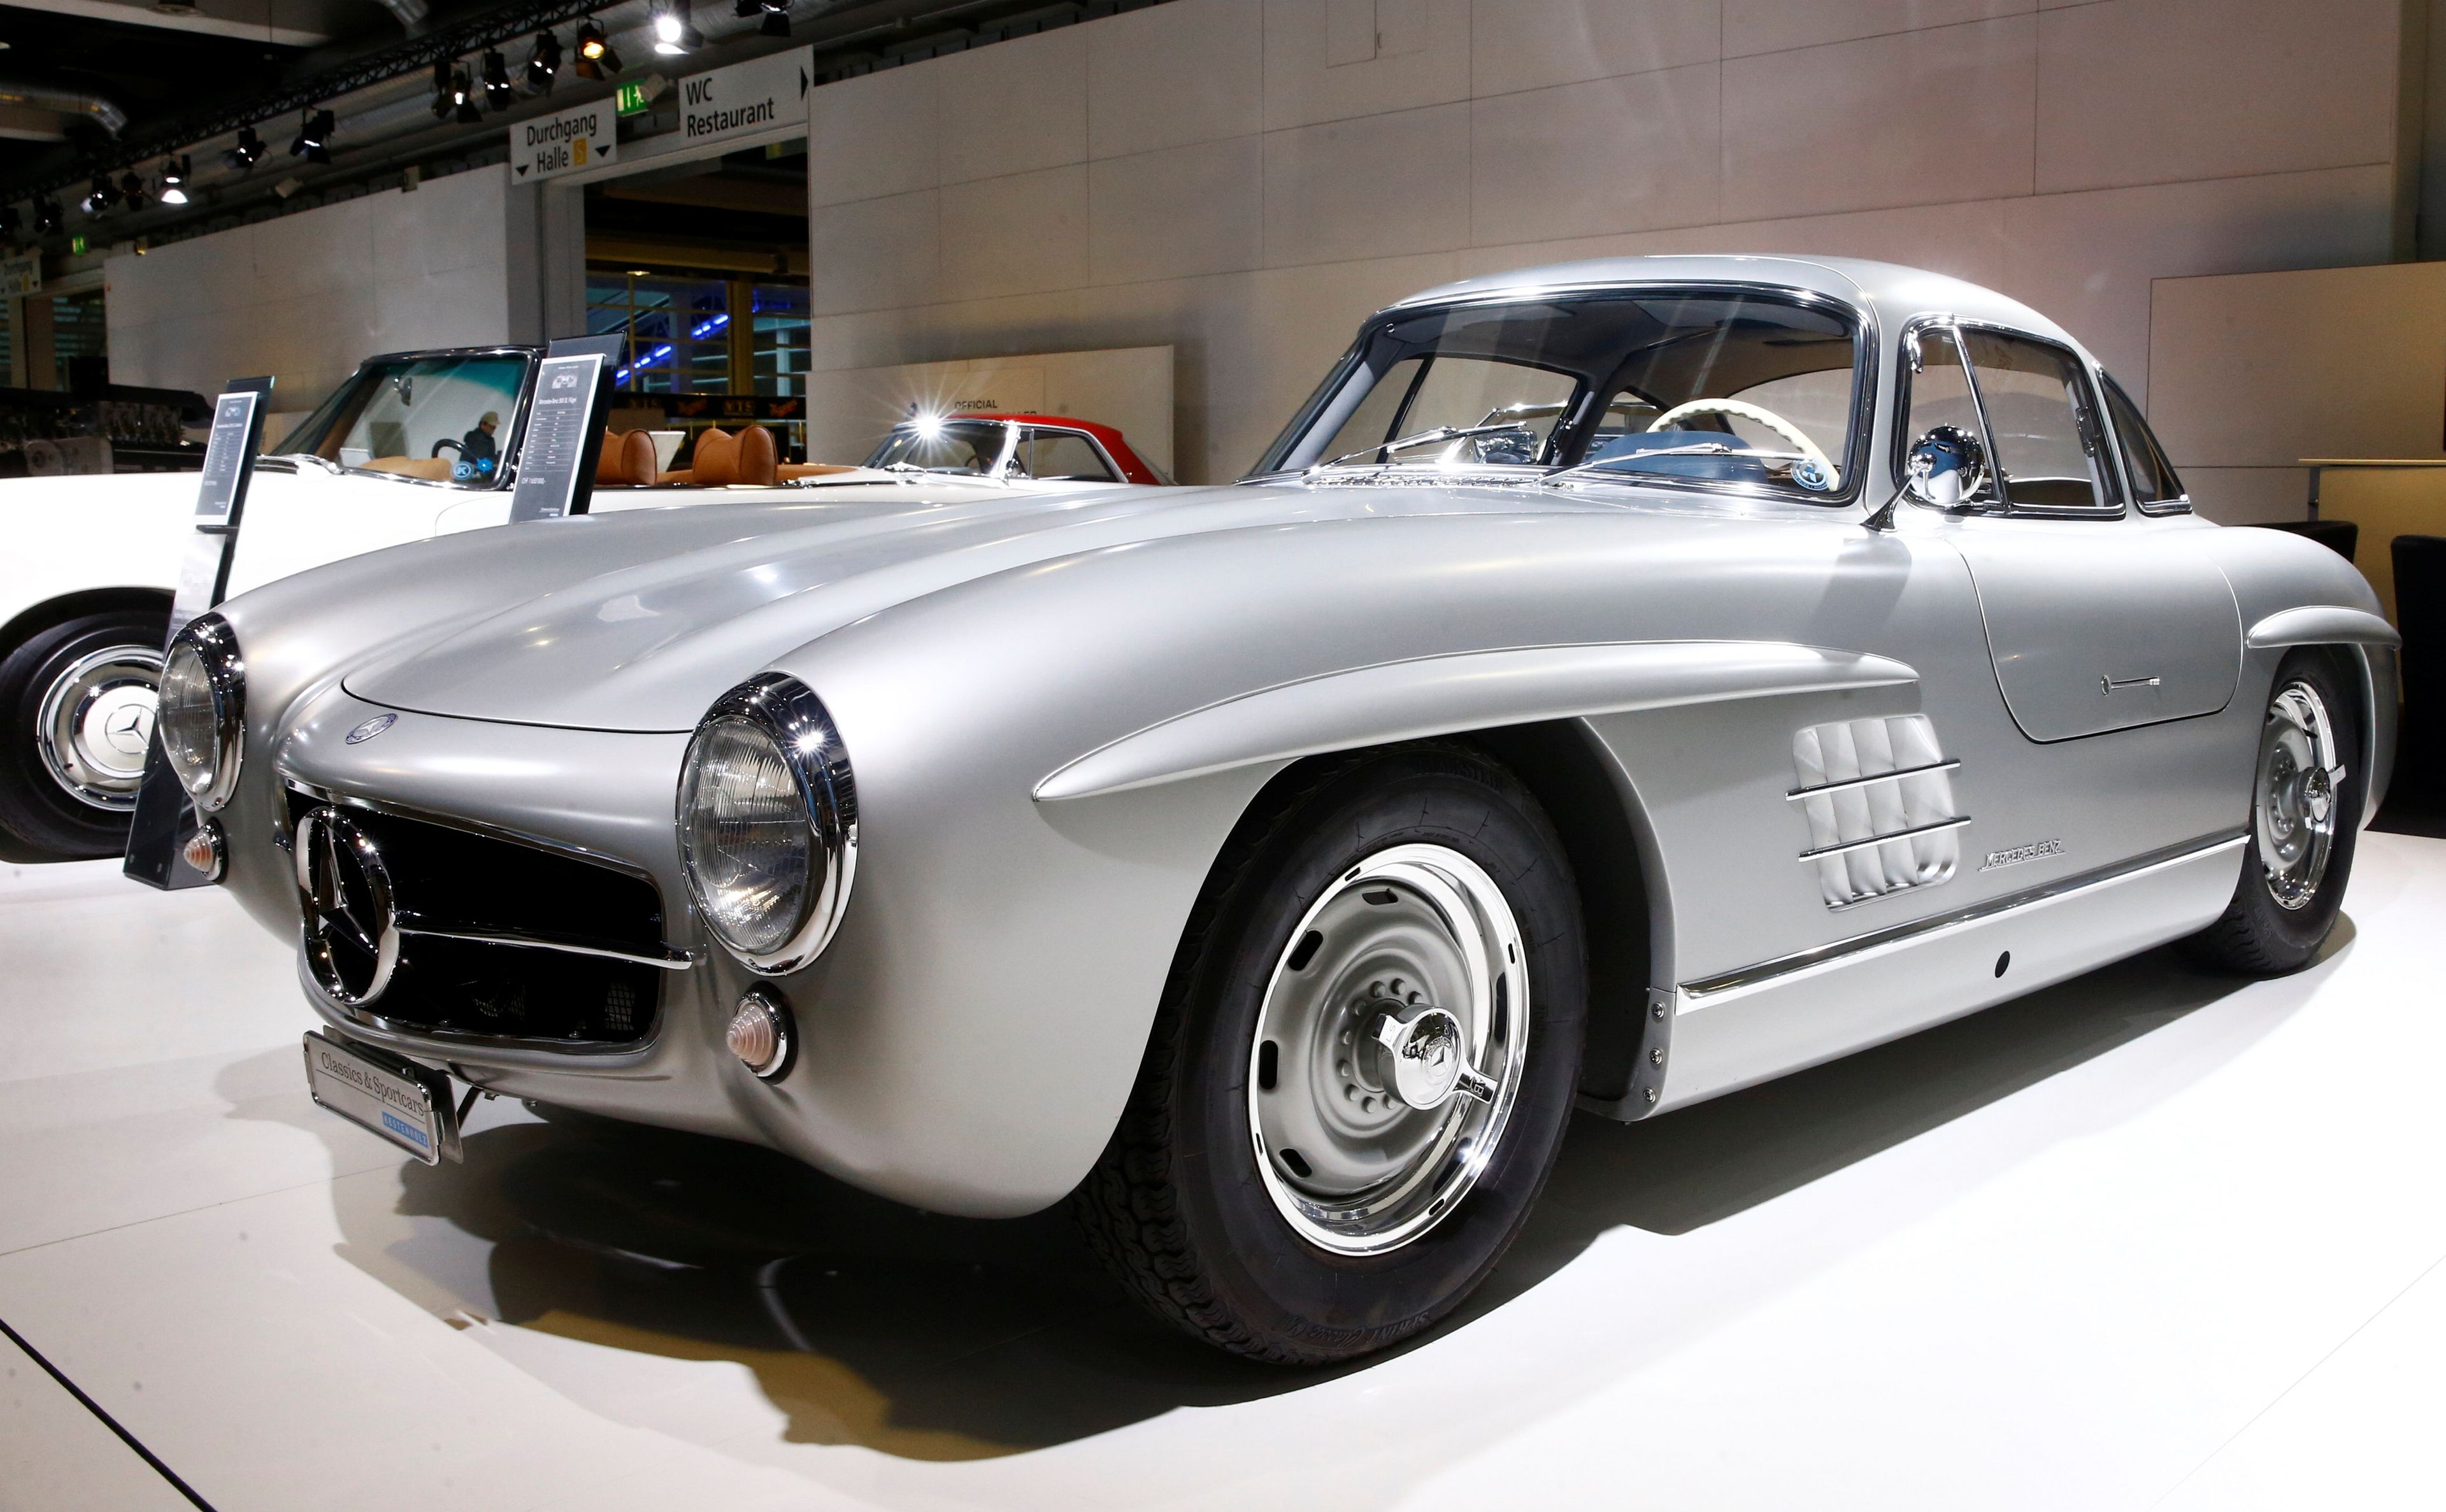 Mercedes fue en su día sinónimo de lujo. ¿Sigue siendo eso cierto hoy en día?